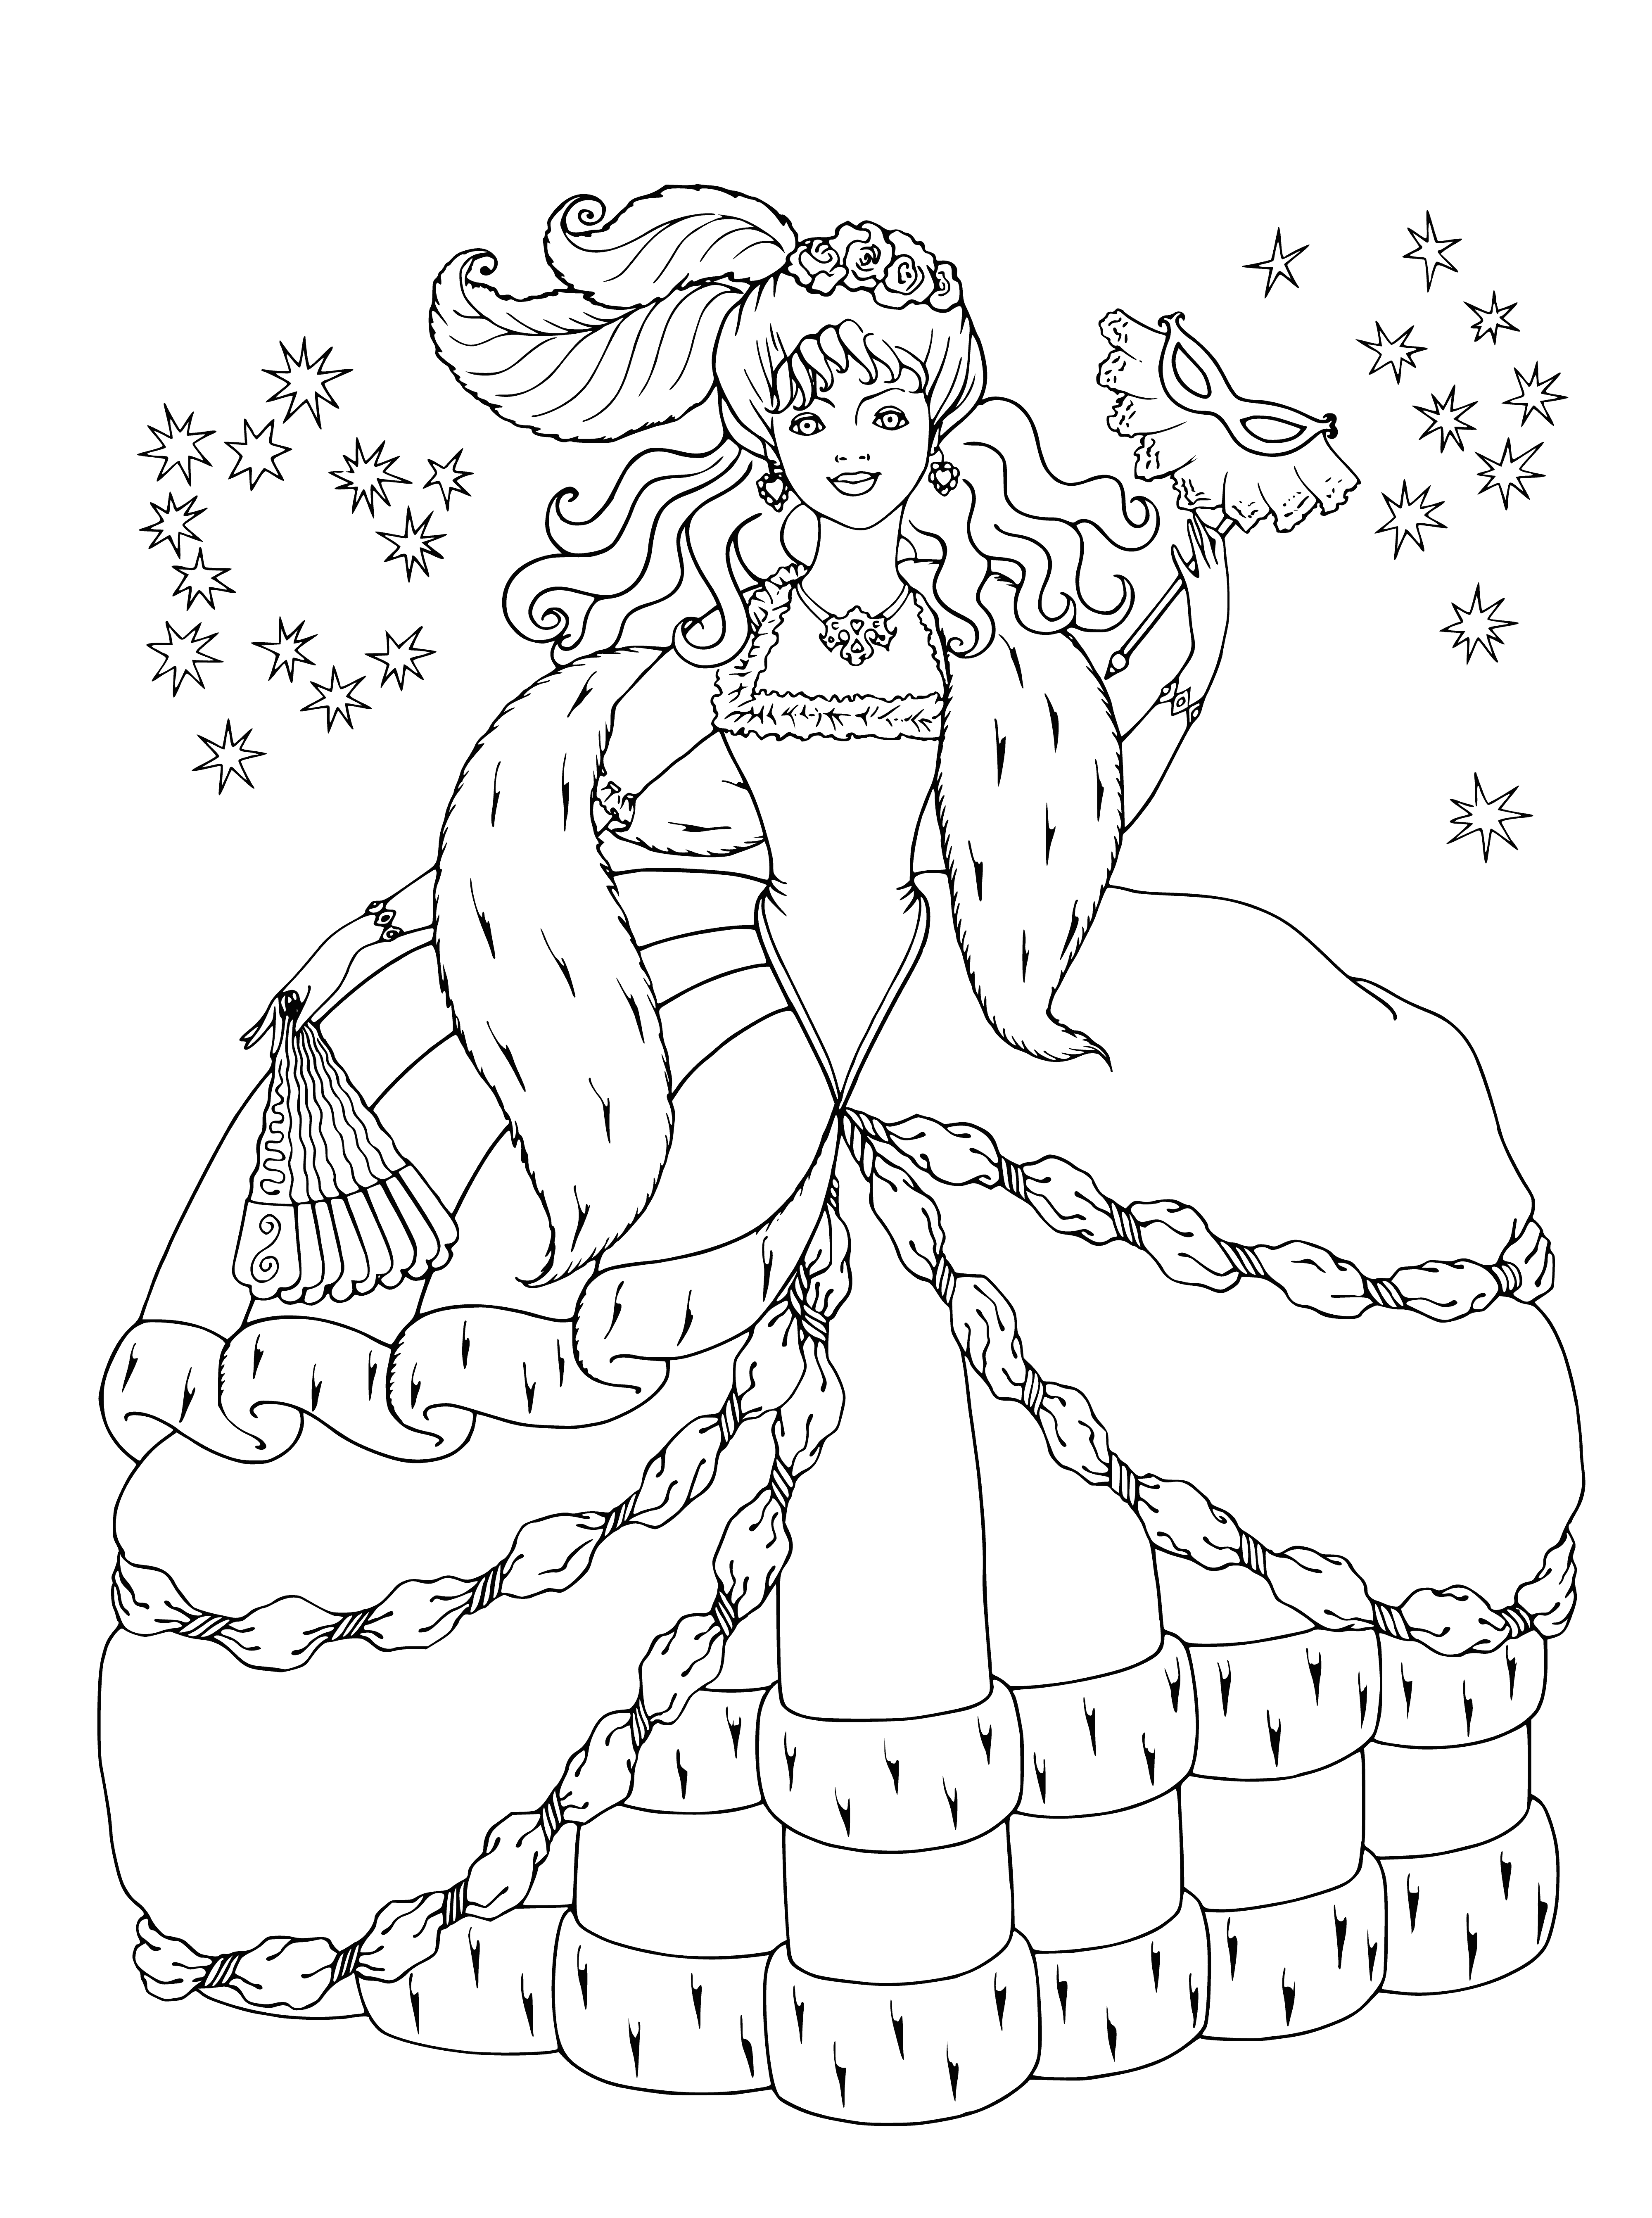 Princess at the ball coloring page